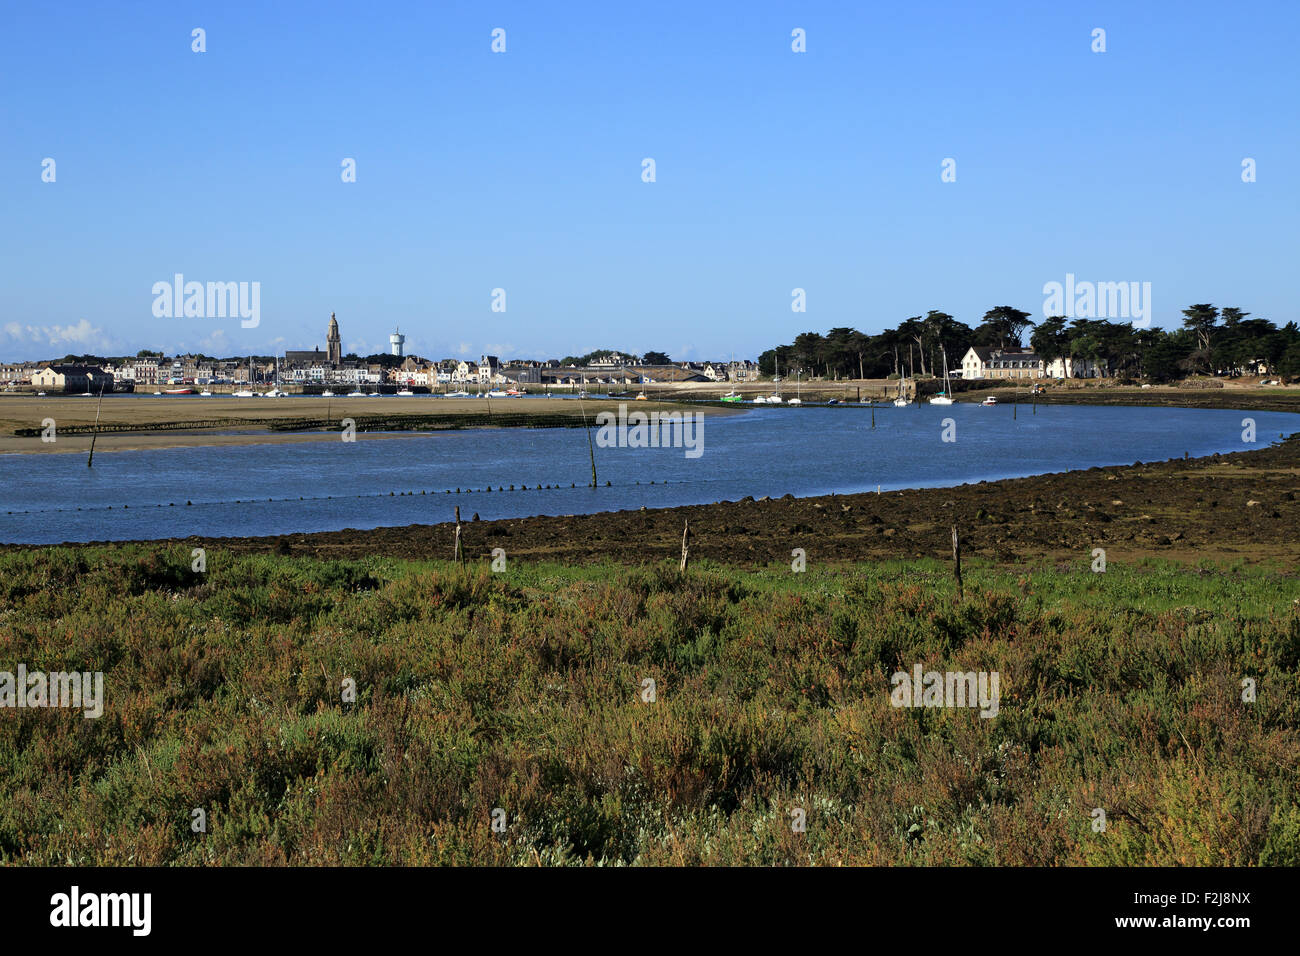 View of Le Croisic from across salt marsh at Pointe de Pen Bron, Guerande, Loire-Atlantique, France Stock Photo